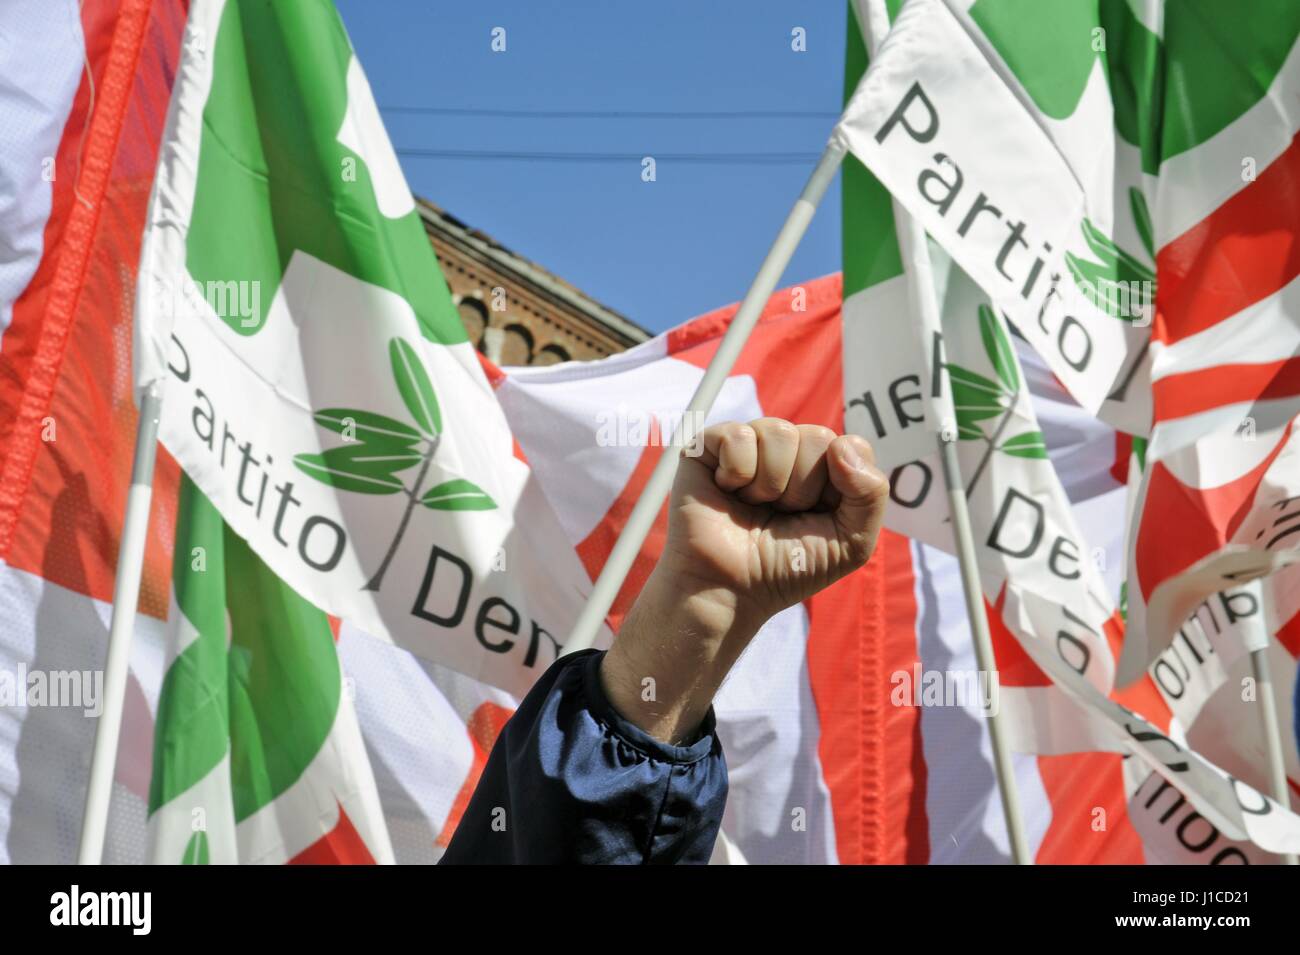 El 25 de abril se celebra anualmente en toda Italia, con fiestas y manifestaciones para recordar la liberación del nazi-fascismo. Foto de stock